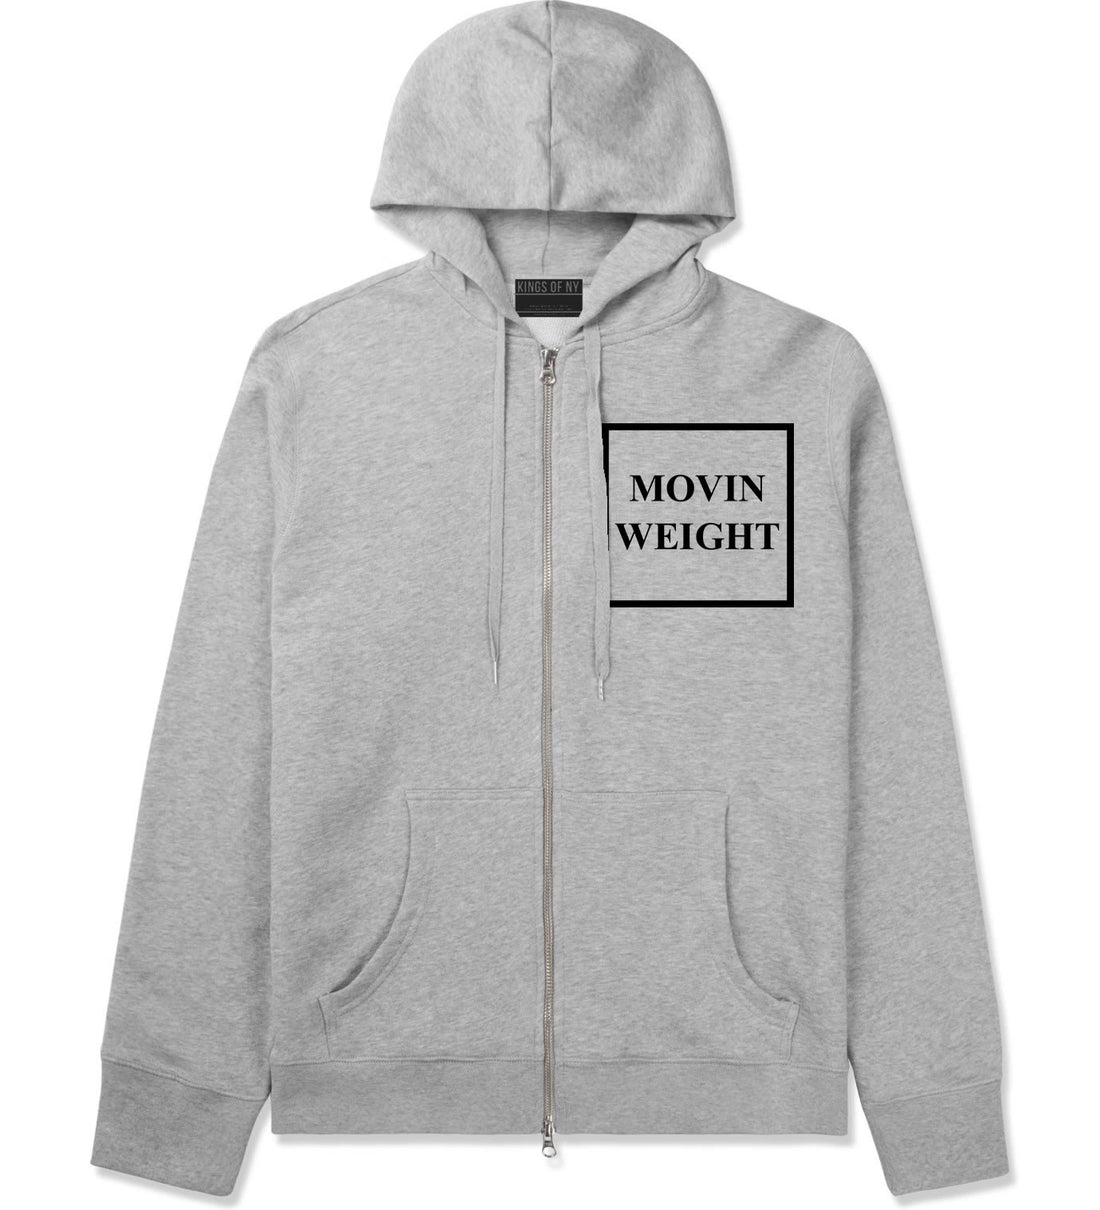 Movin Weight Hustler Zip Up Hoodie Hoody in Grey by Kings Of NY